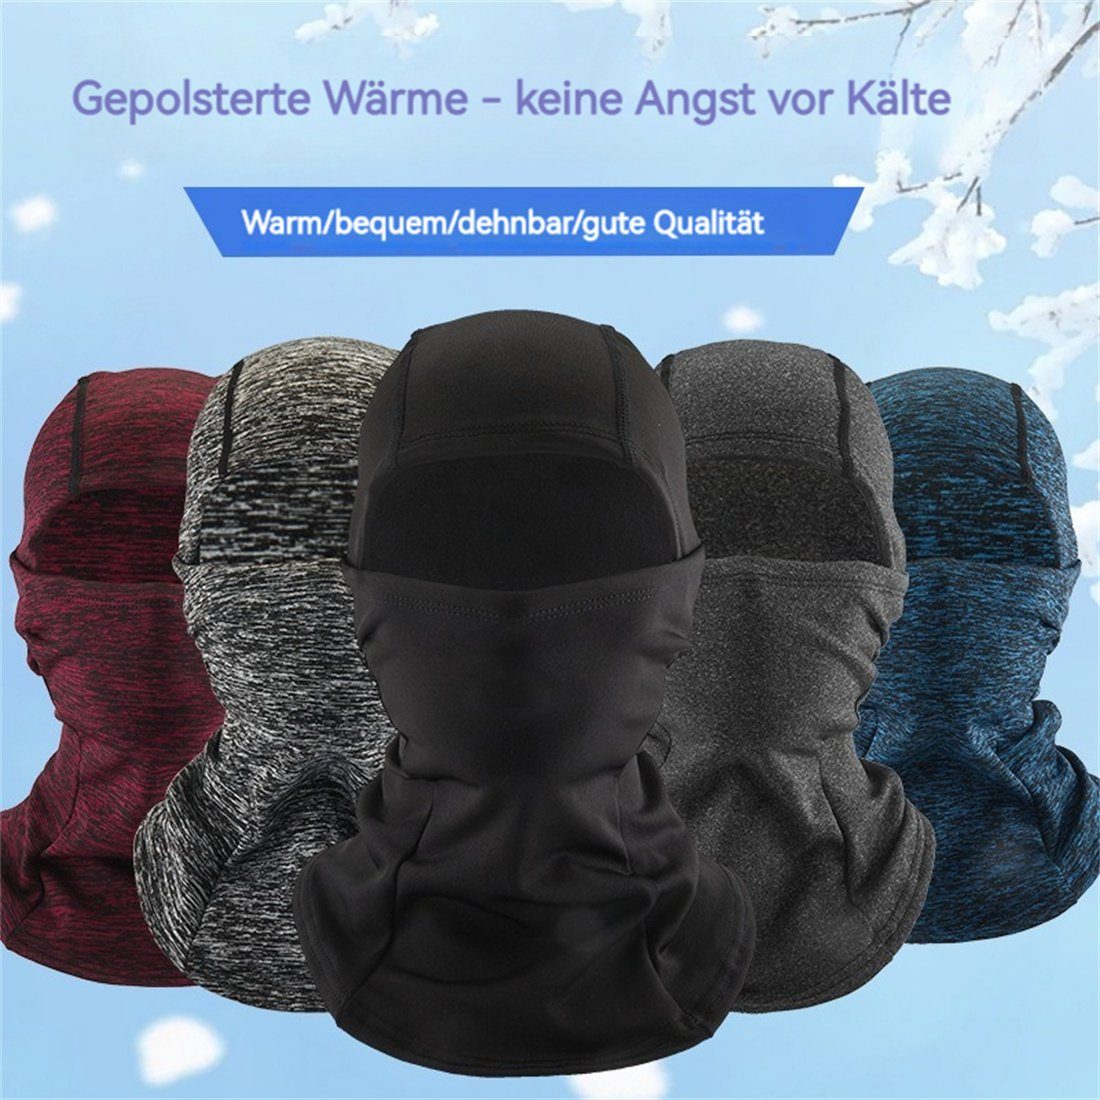 Schwarz DÖRÖY Sturmhaube kalte warme Radfahren Maske, unisex Winter Kopfbedeckung, Ski